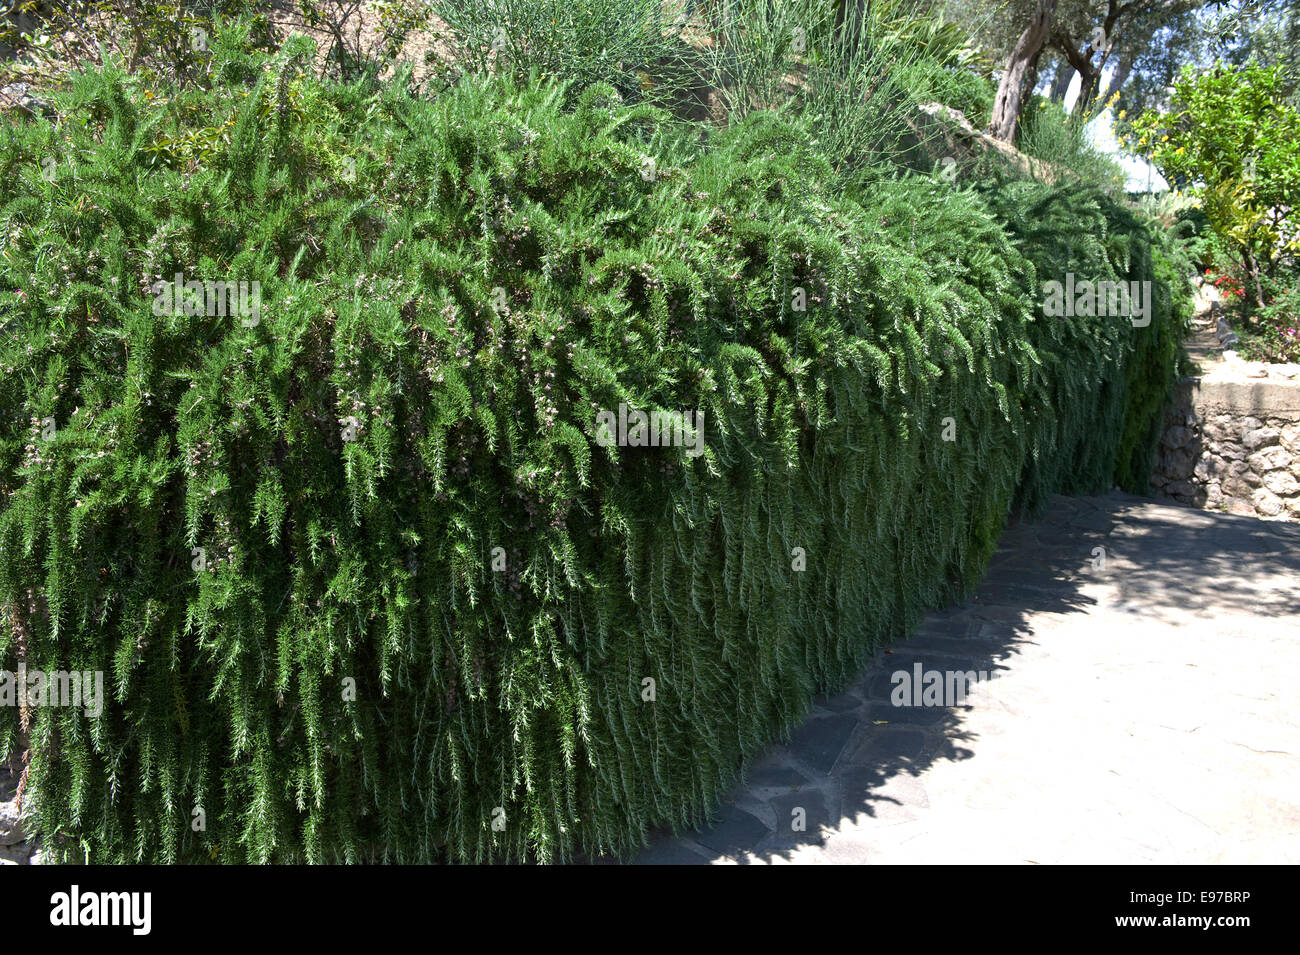 En retrait, de romarin Rosmarinus officinalis Prostratus, herbe dans un jardin méditerranéen sur la baie de Naples près de Sorrento Banque D'Images